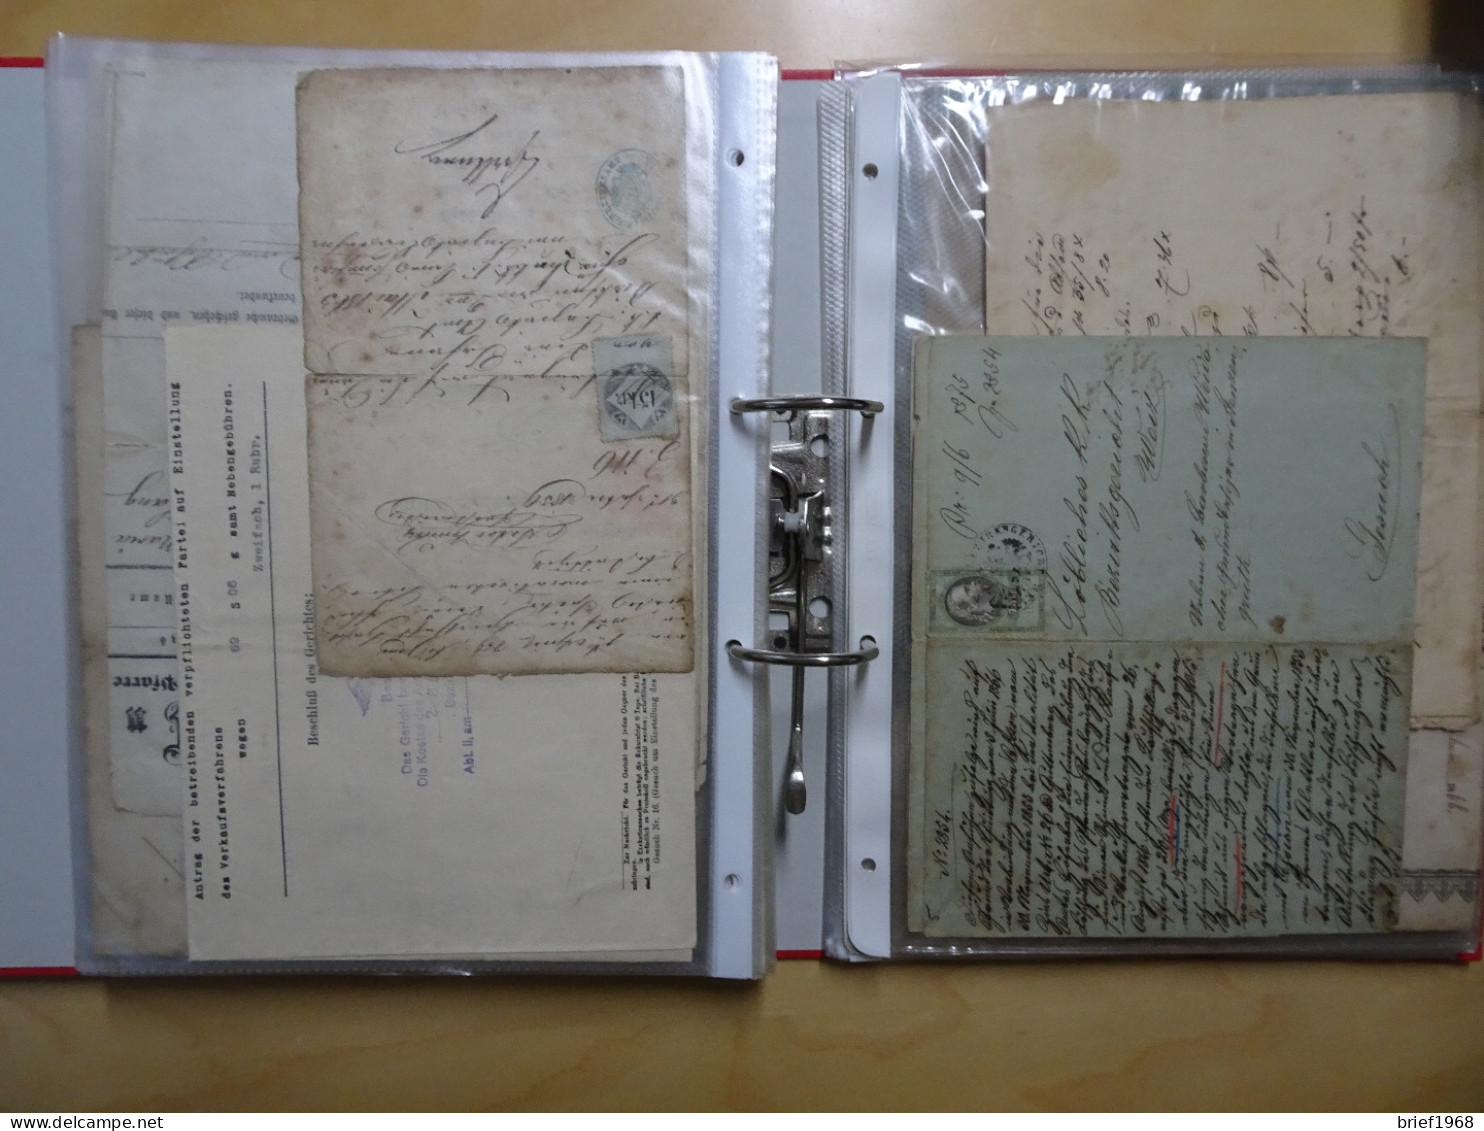 Österreich Sammlung mit Fiskalbelegen, Gebührenmarken, Dokumente (9476)